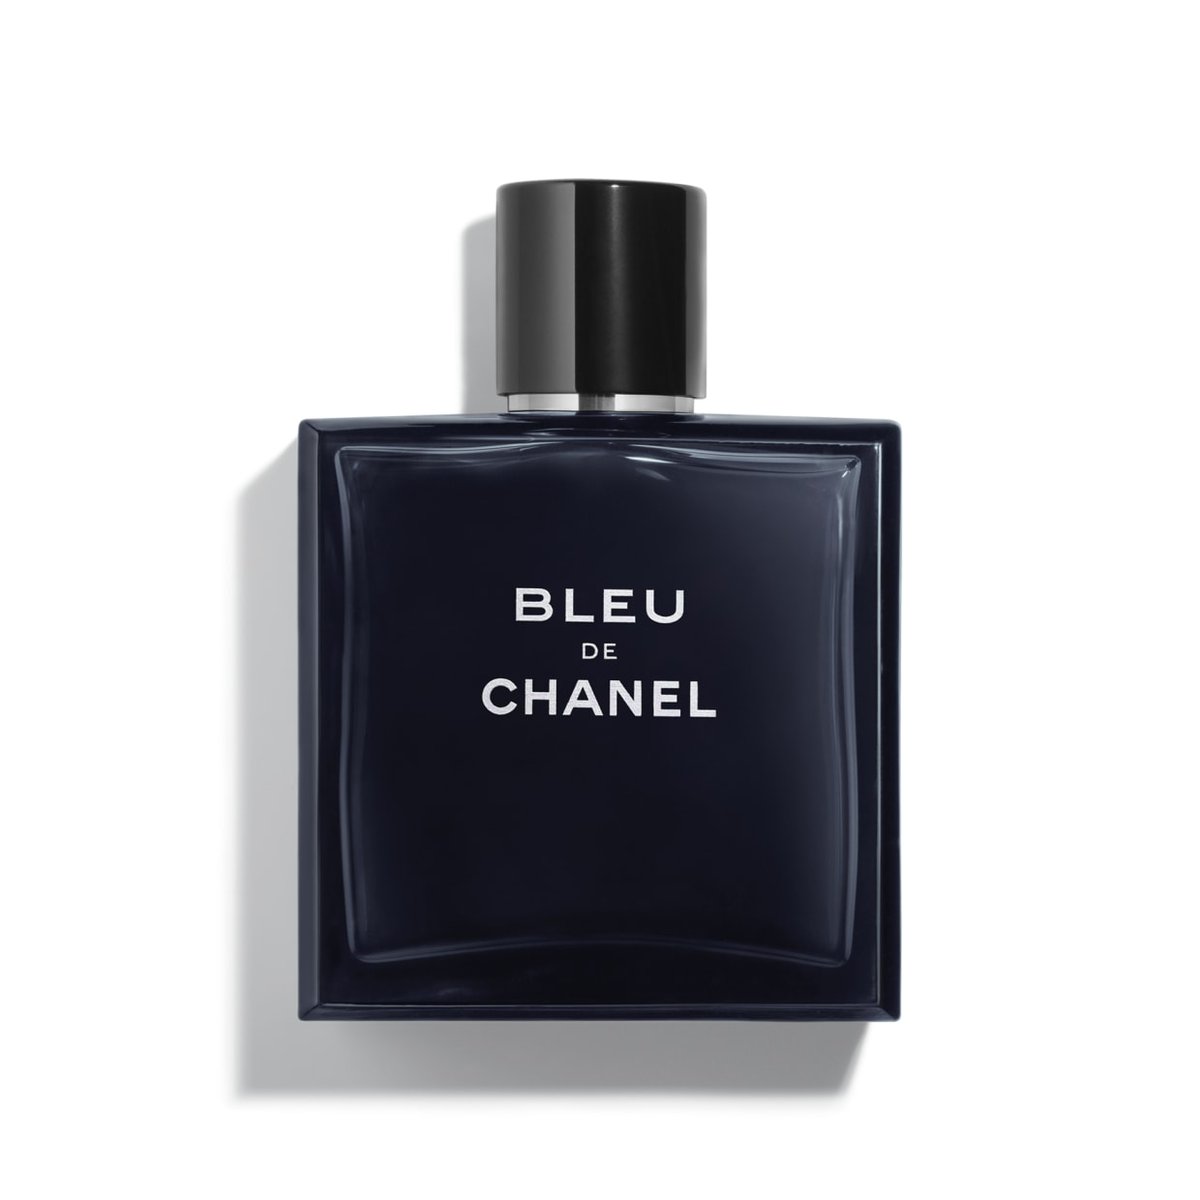 park jimin as Bleu de Chanel #Dynamite  #TheMusicVideo  #PCAs  @BTS_twt